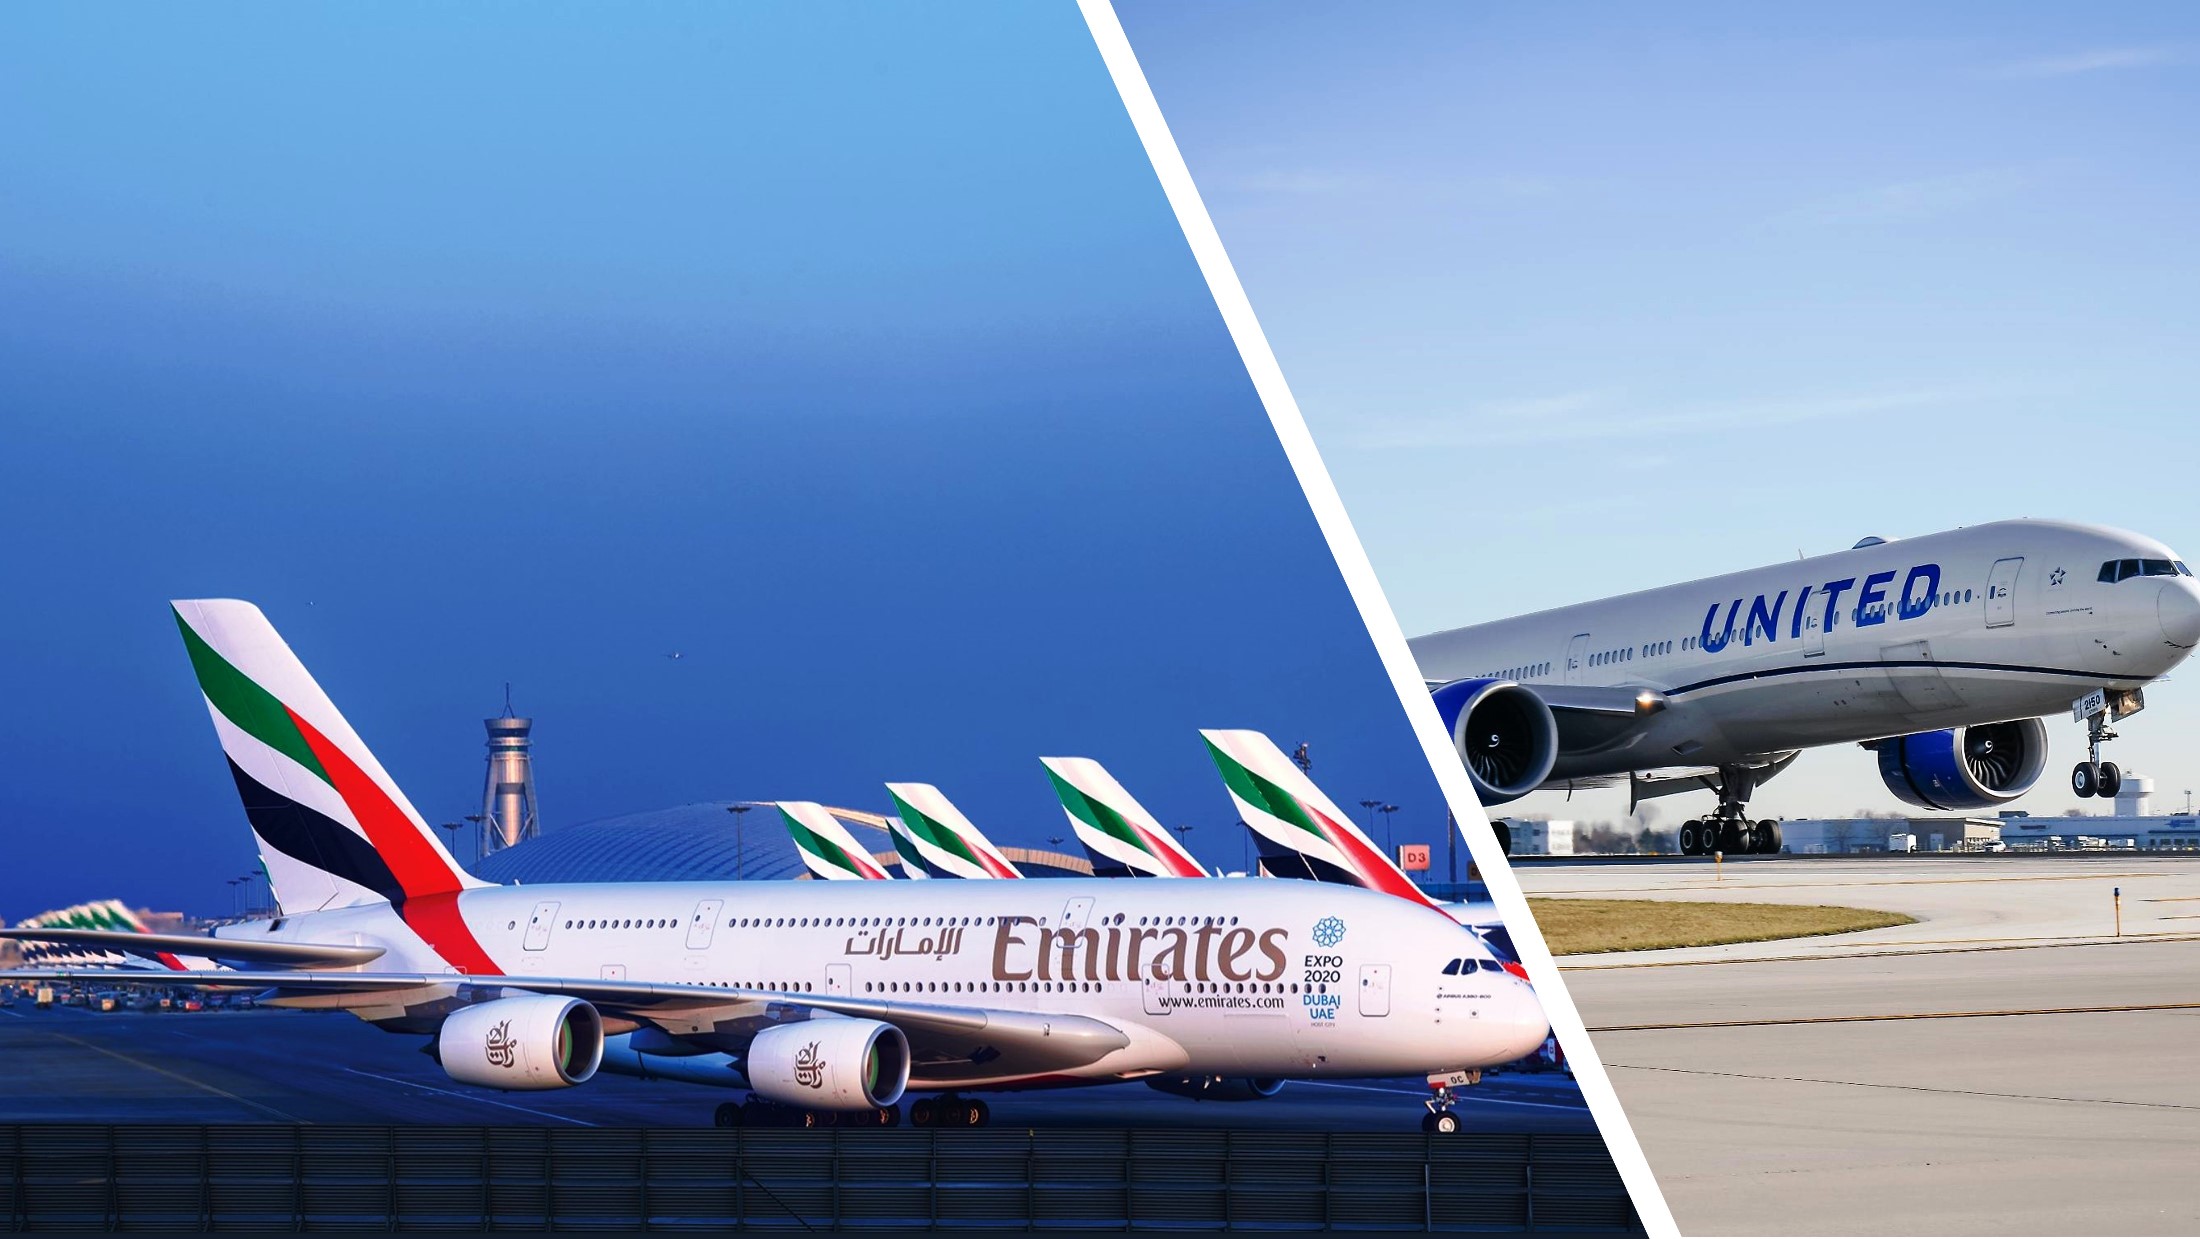 Emirates & United Airlines